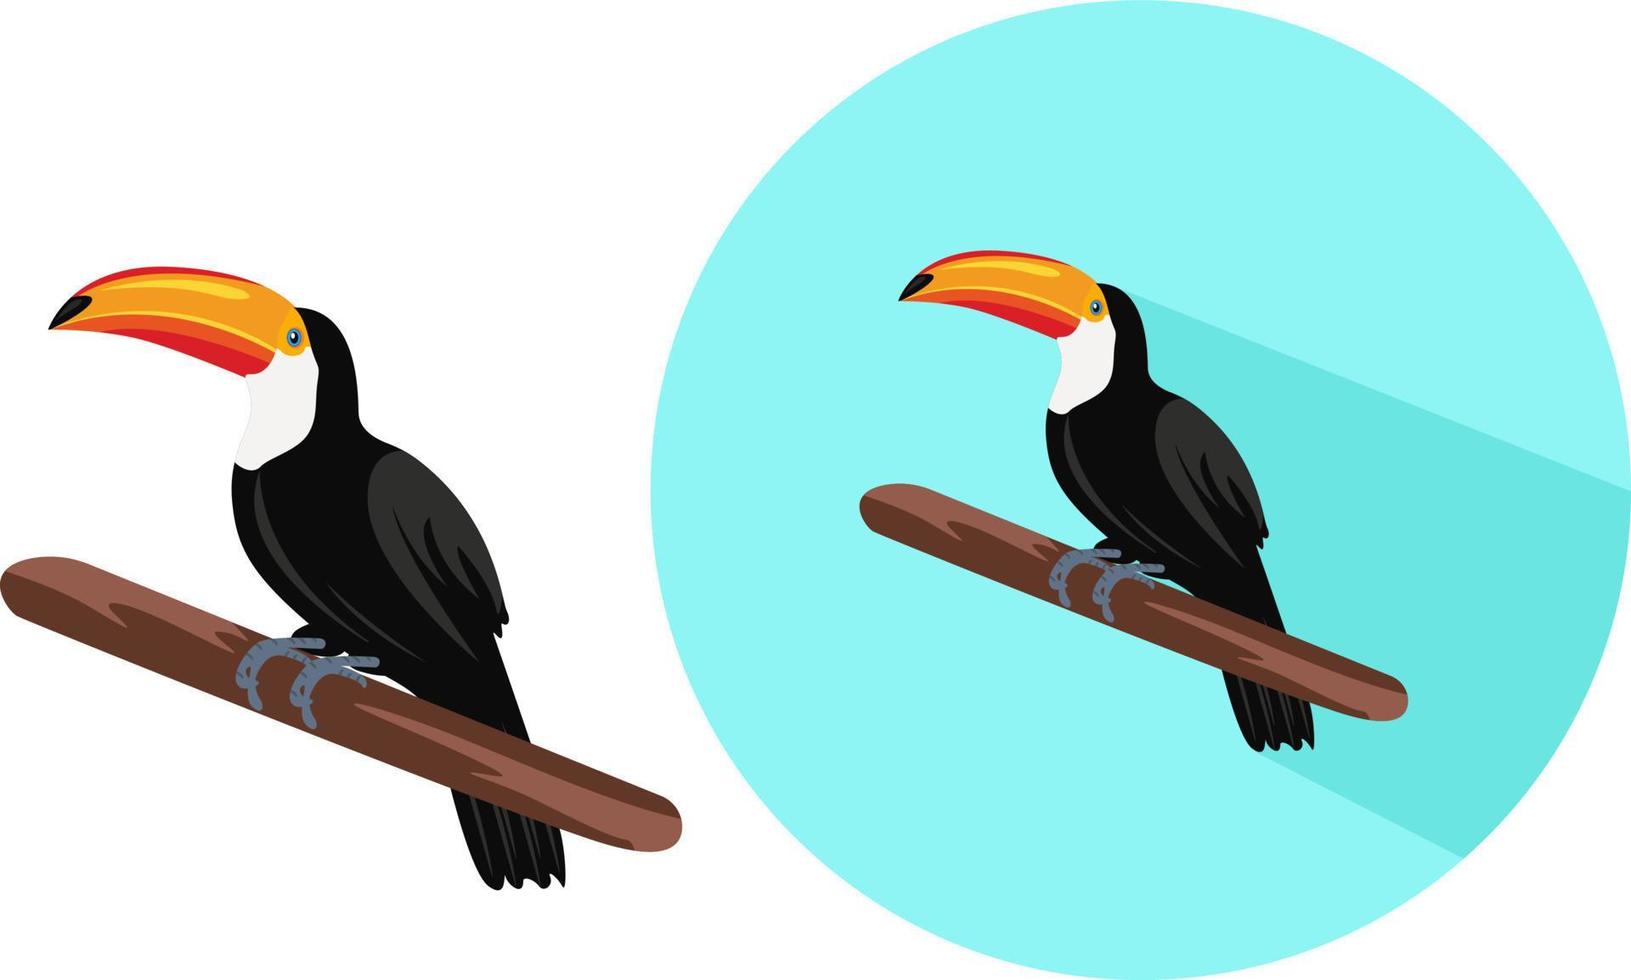 Tukanvogel, Illustration, Vektor auf weißem Hintergrund.